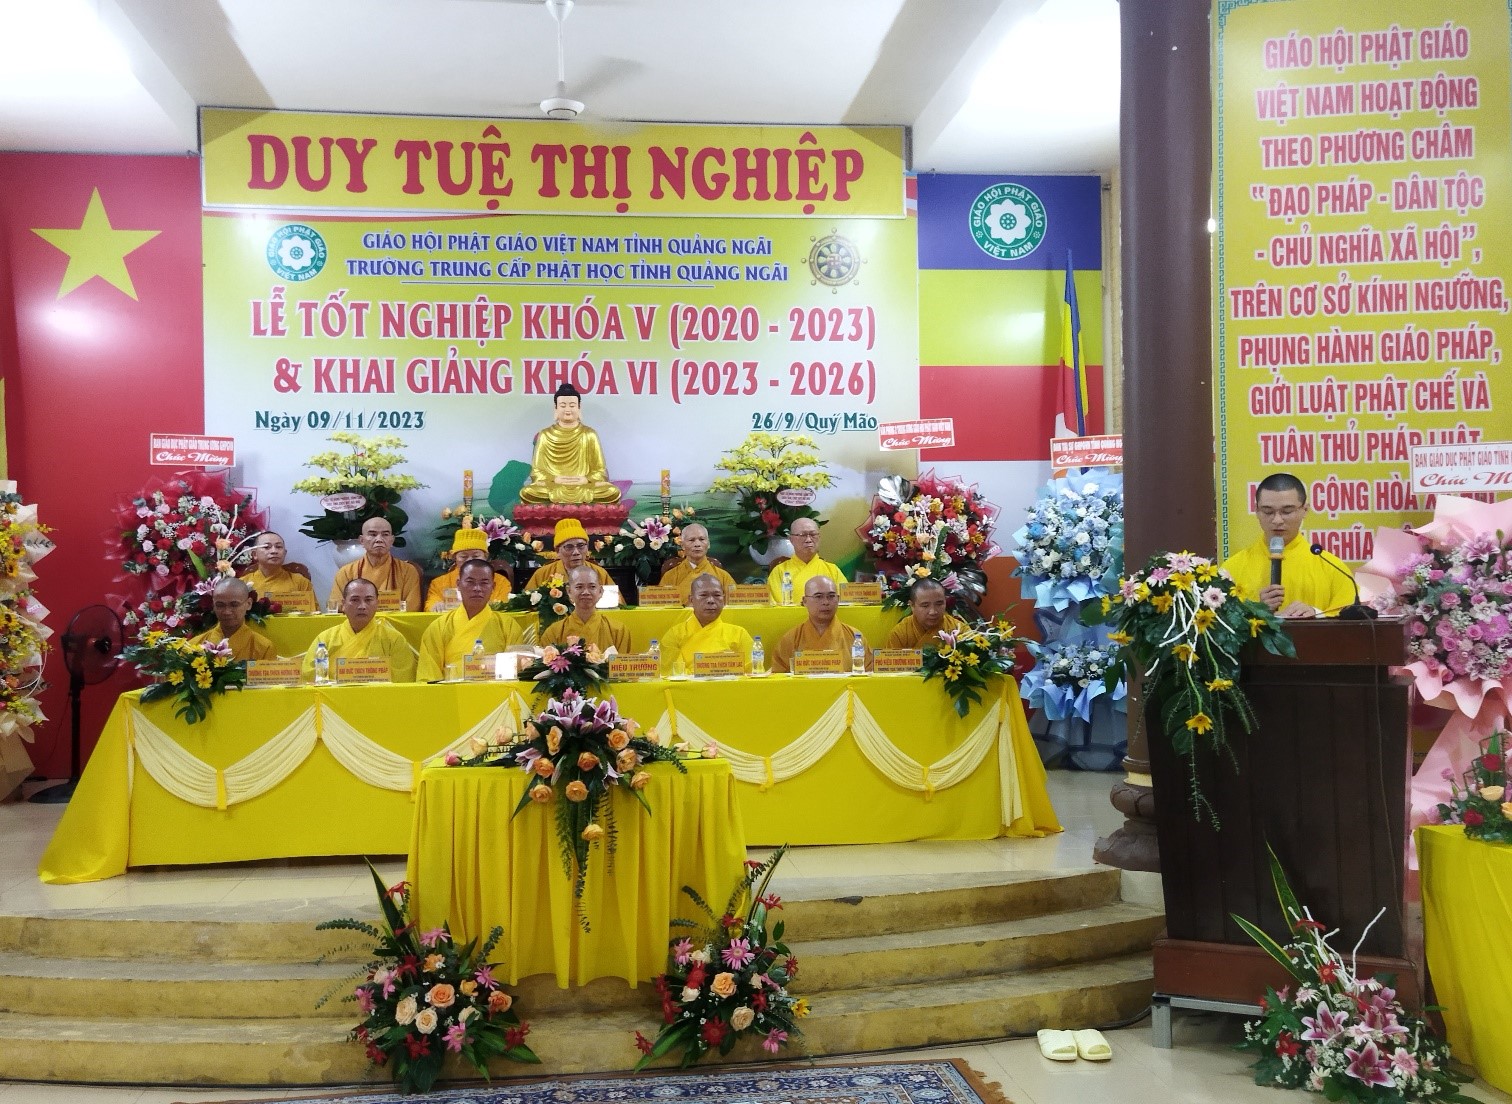 Trường Trung cấp Phật học tỉnh tổ chức lễ Tốt nghiệp khoá V (niên khoá 2020 - 2023) và khai giảng khoá VI (niên khoá 2023 - 2026)